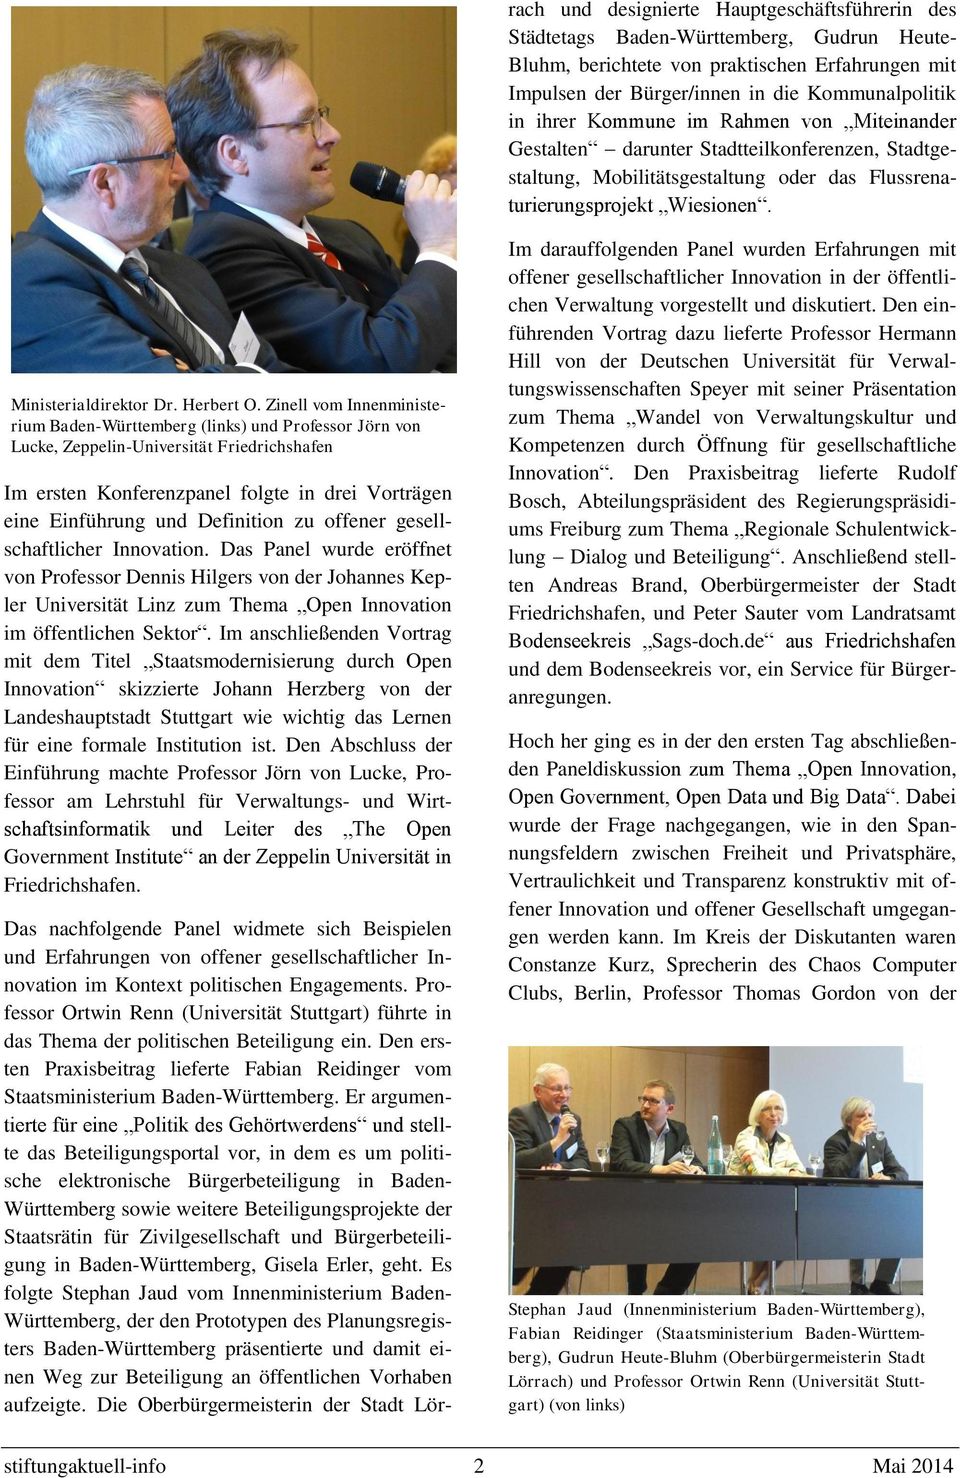 Zinell vom Innenministerium Baden-Württemberg (links) und Professor Jörn von Lucke, Zeppelin-Universität Friedrichshafen Im ersten Konferenzpanel folgte in drei Vorträgen eine Einführung und